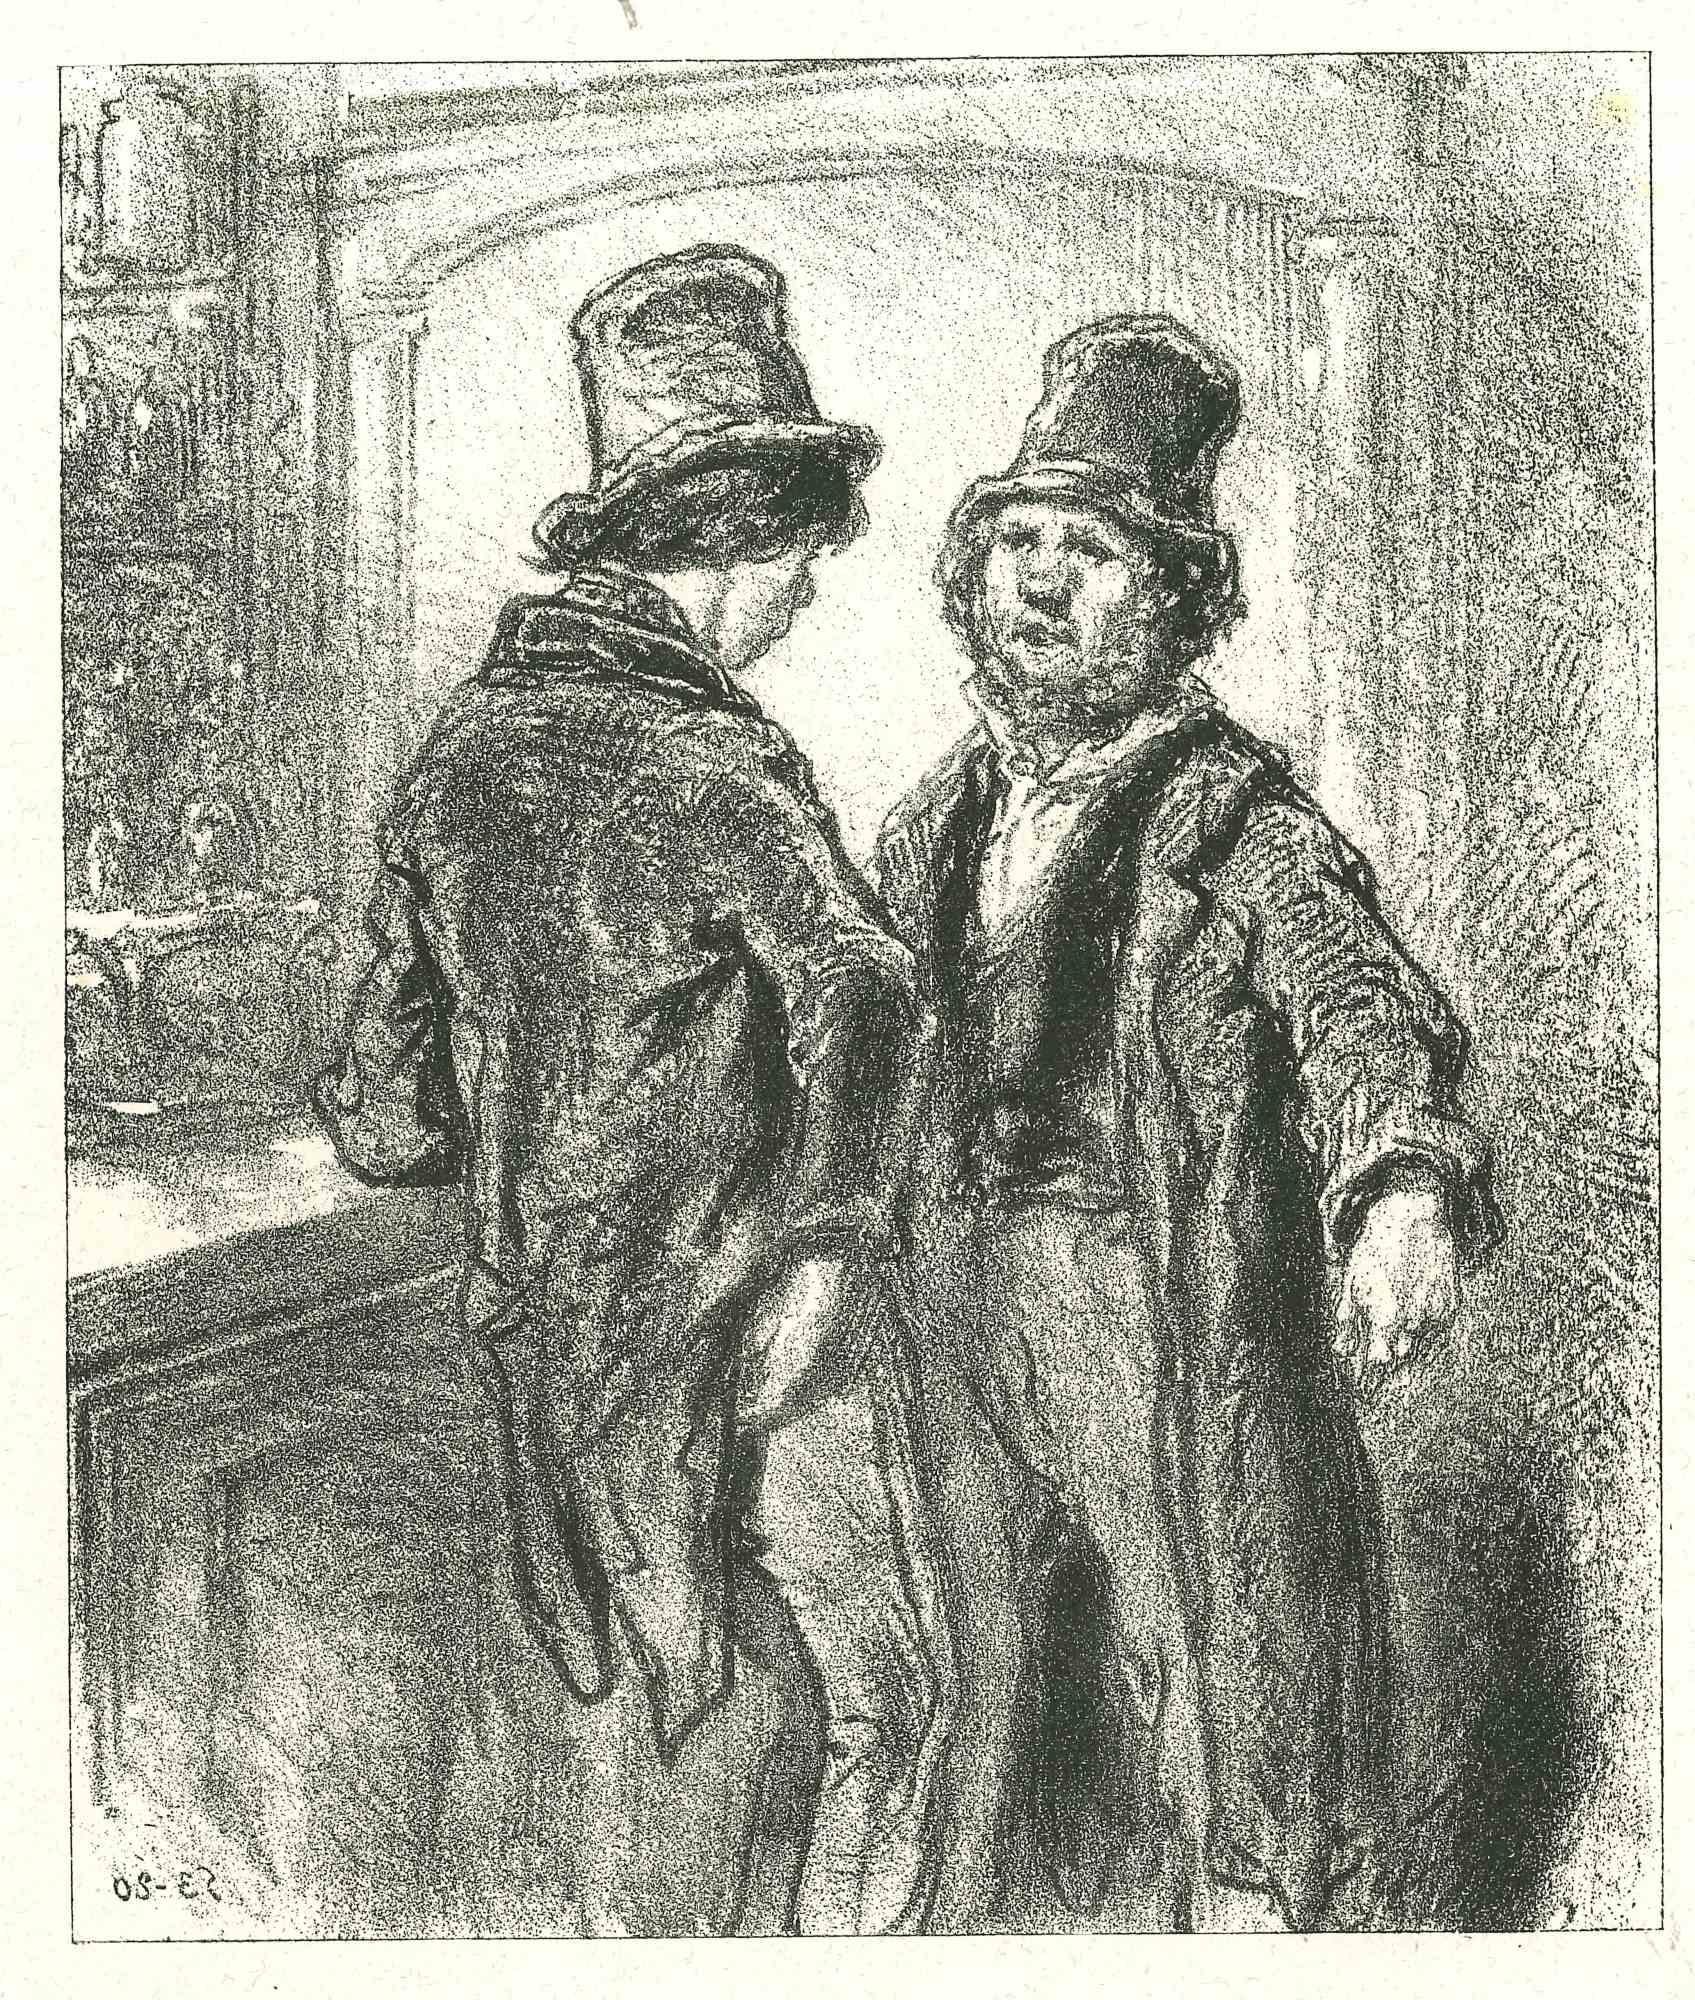 La conversation - Lithographie originale de Paul Gavarni - 1881